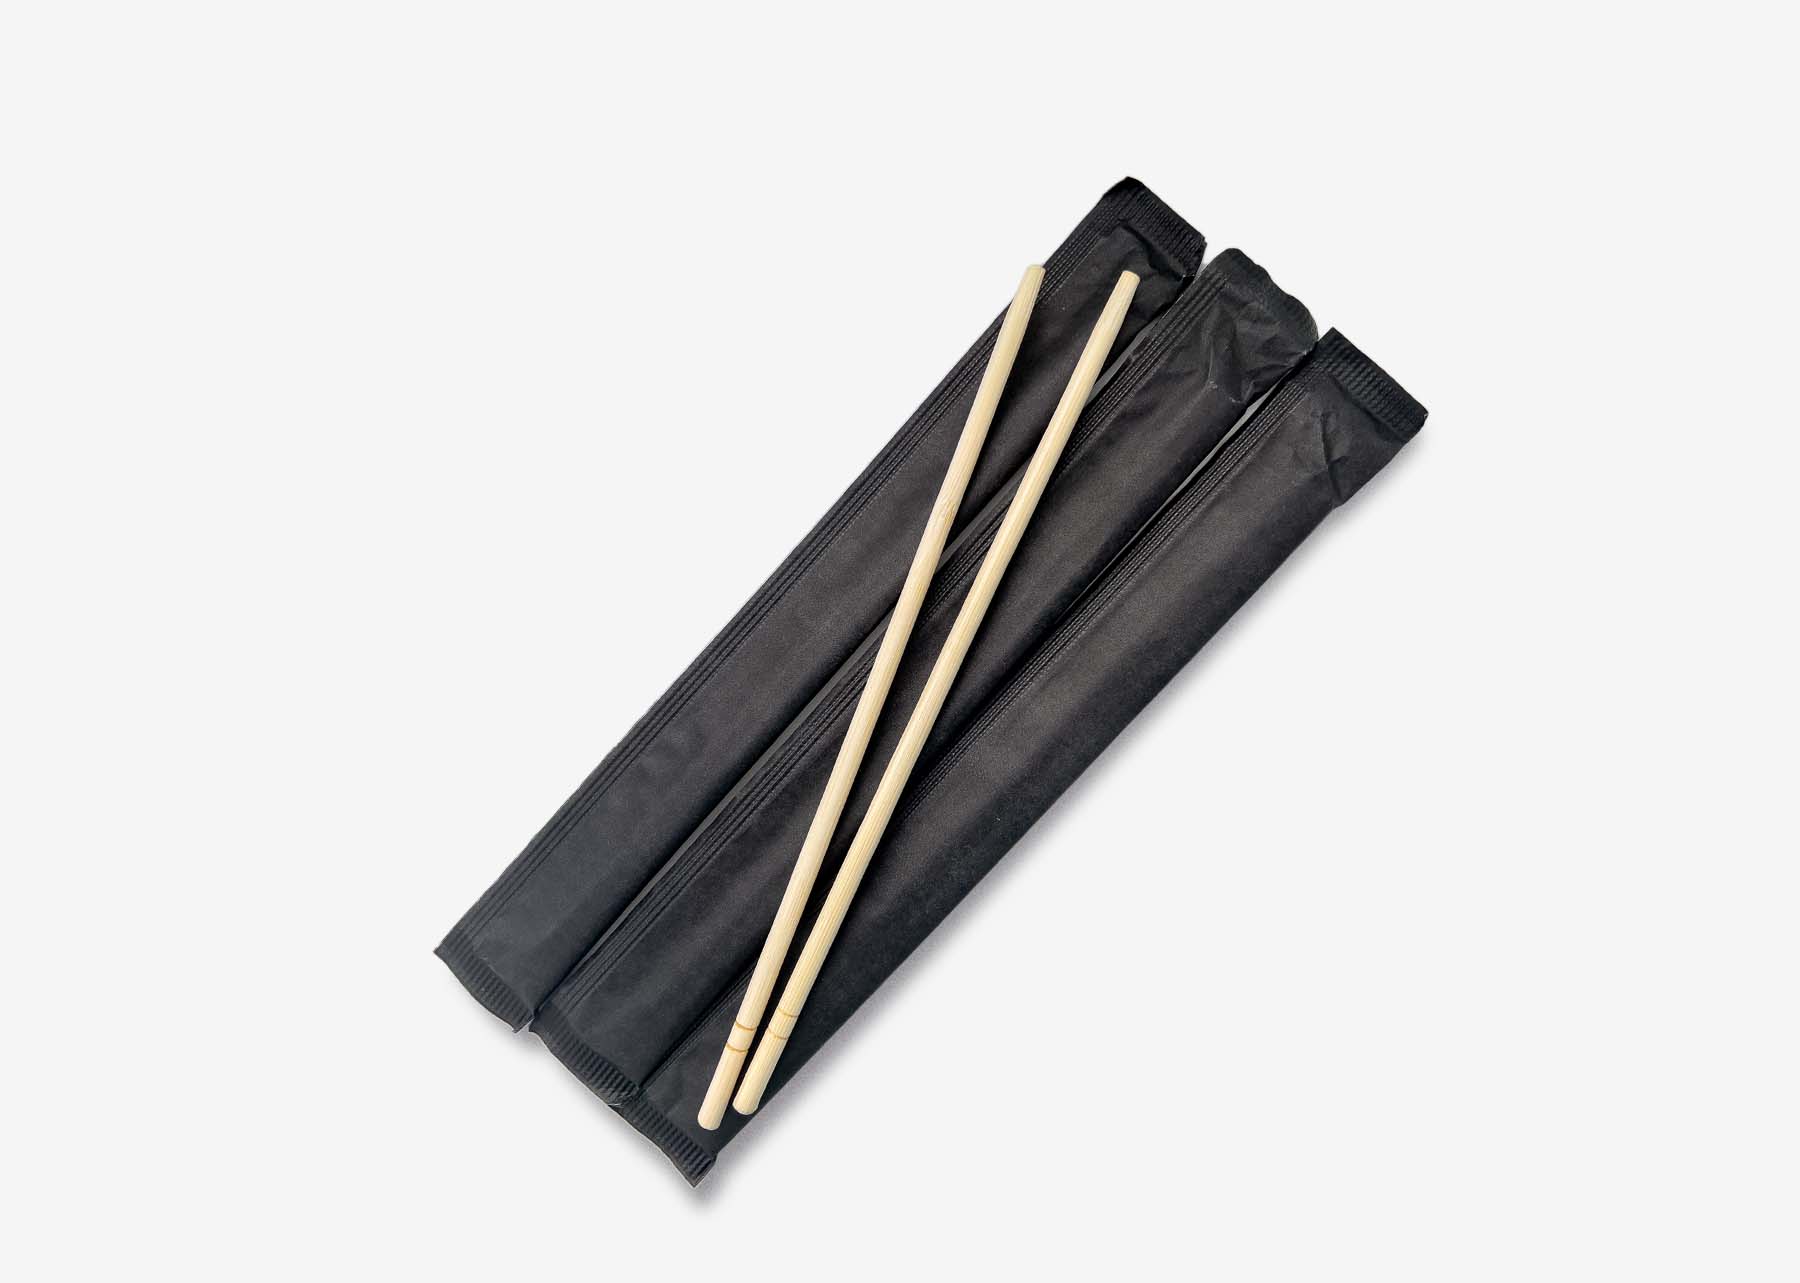 чёрные палочки для суши купить, круглые палочки раздельные для суши, палочки для суши